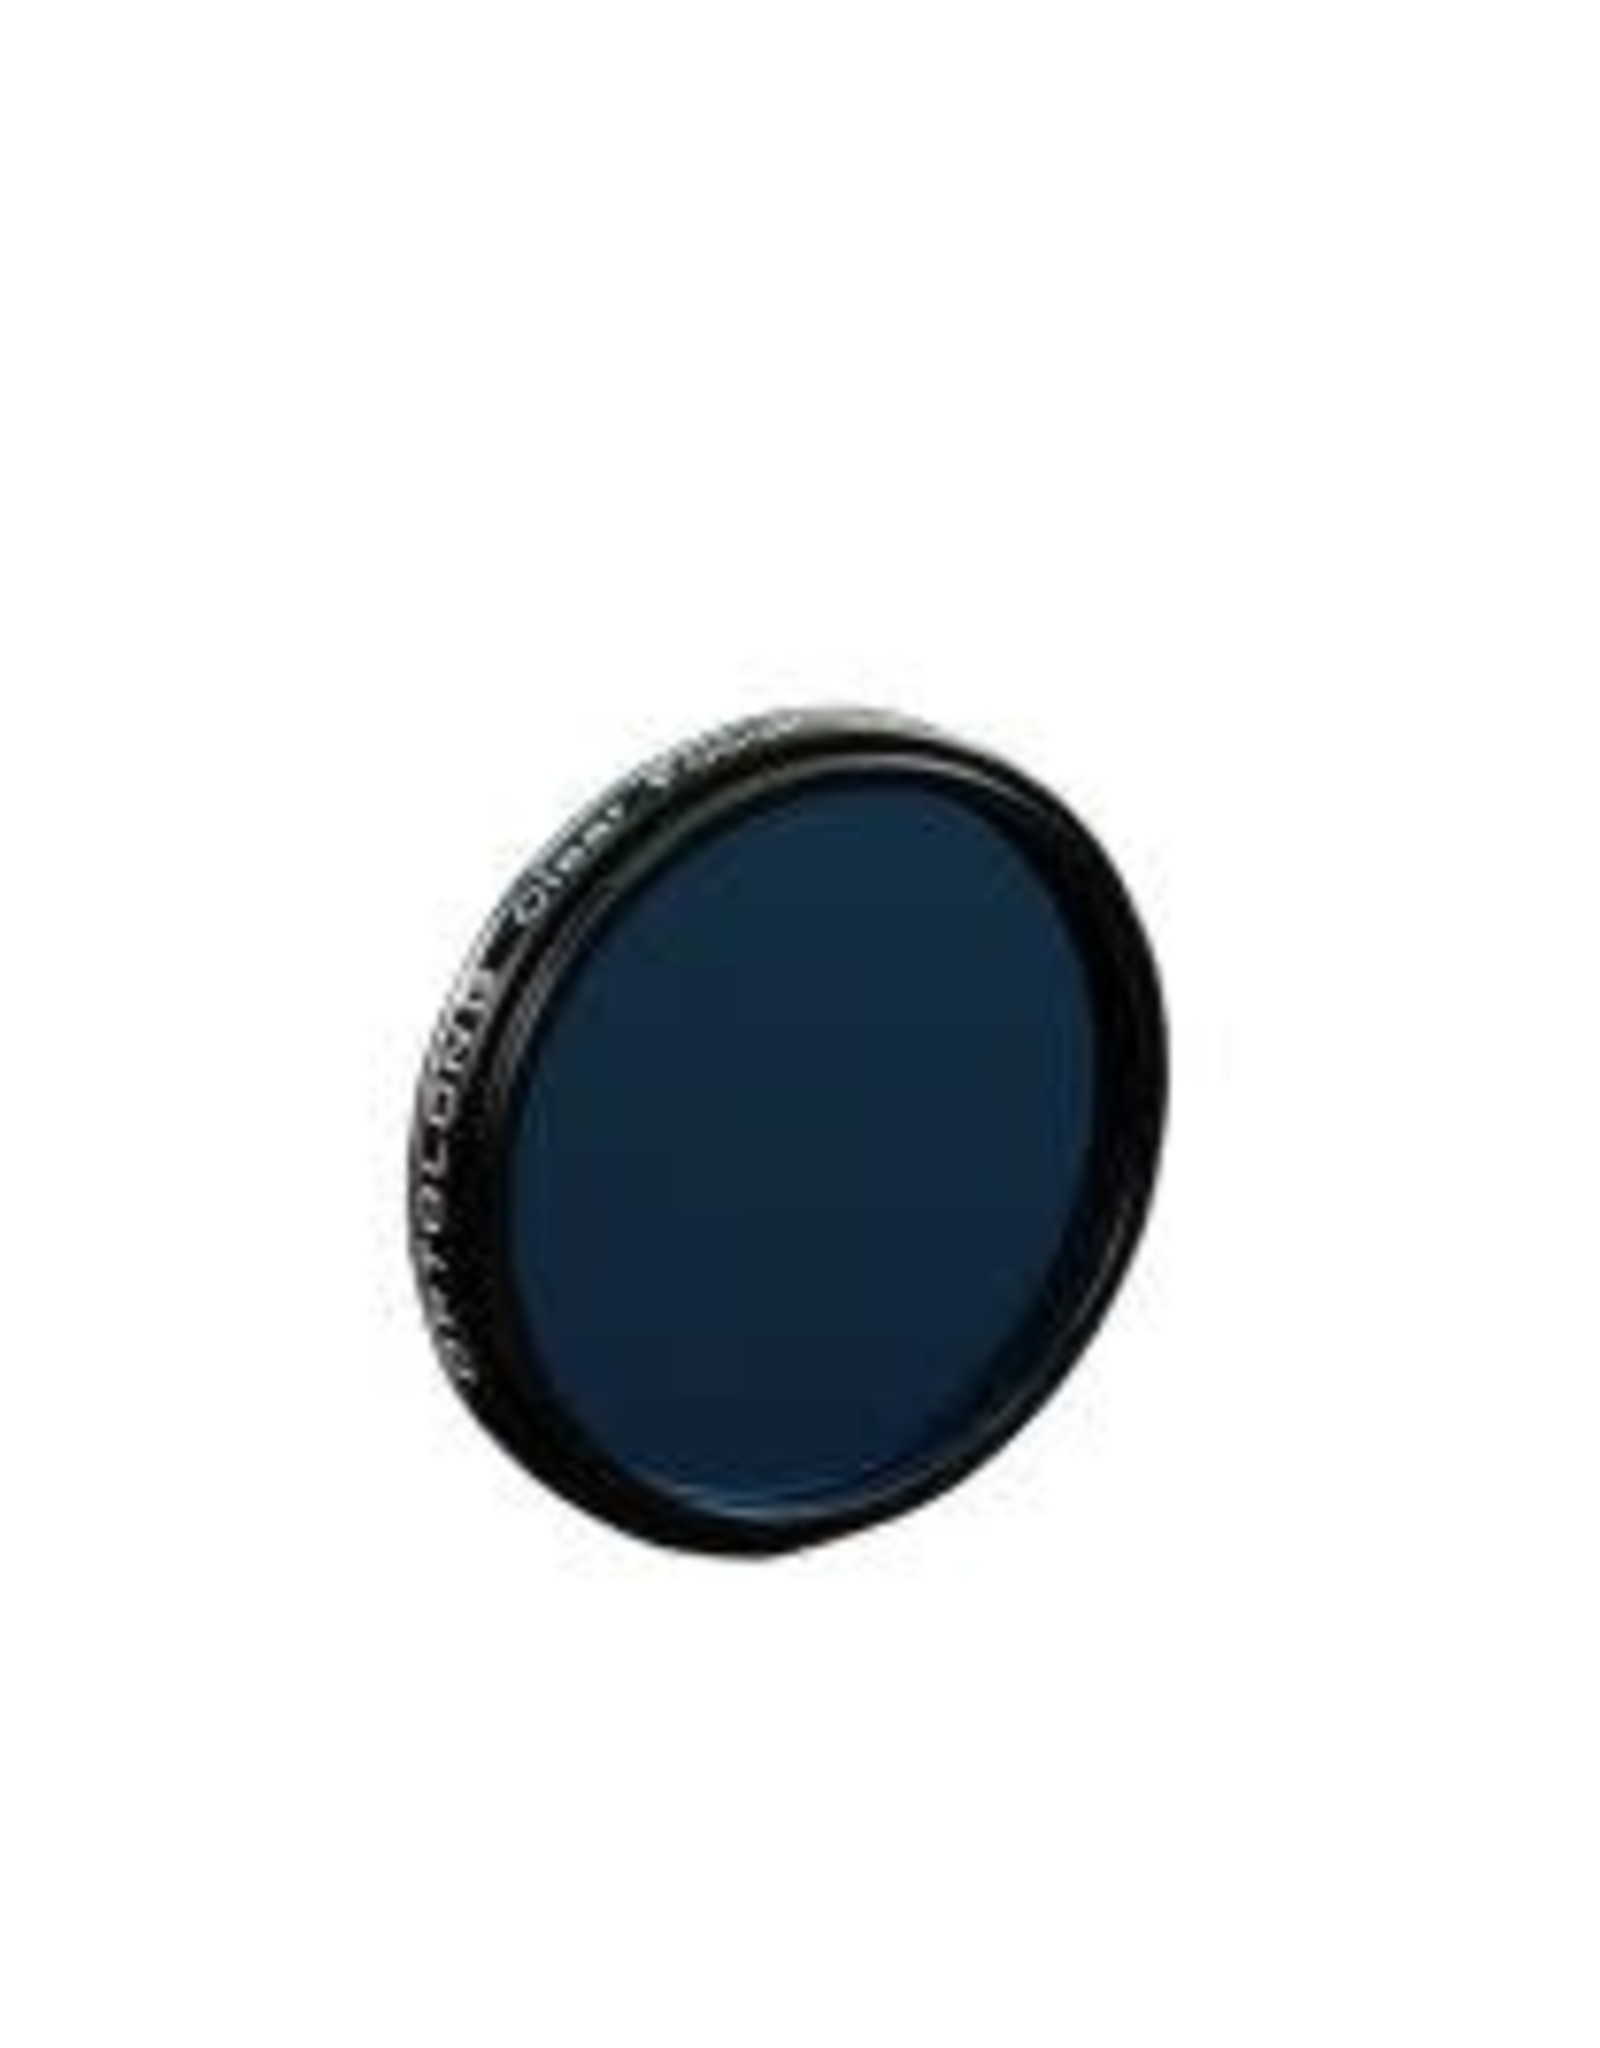 Optolong Optolong Clear Focusing Filter - 2" Mounted - CFF-200